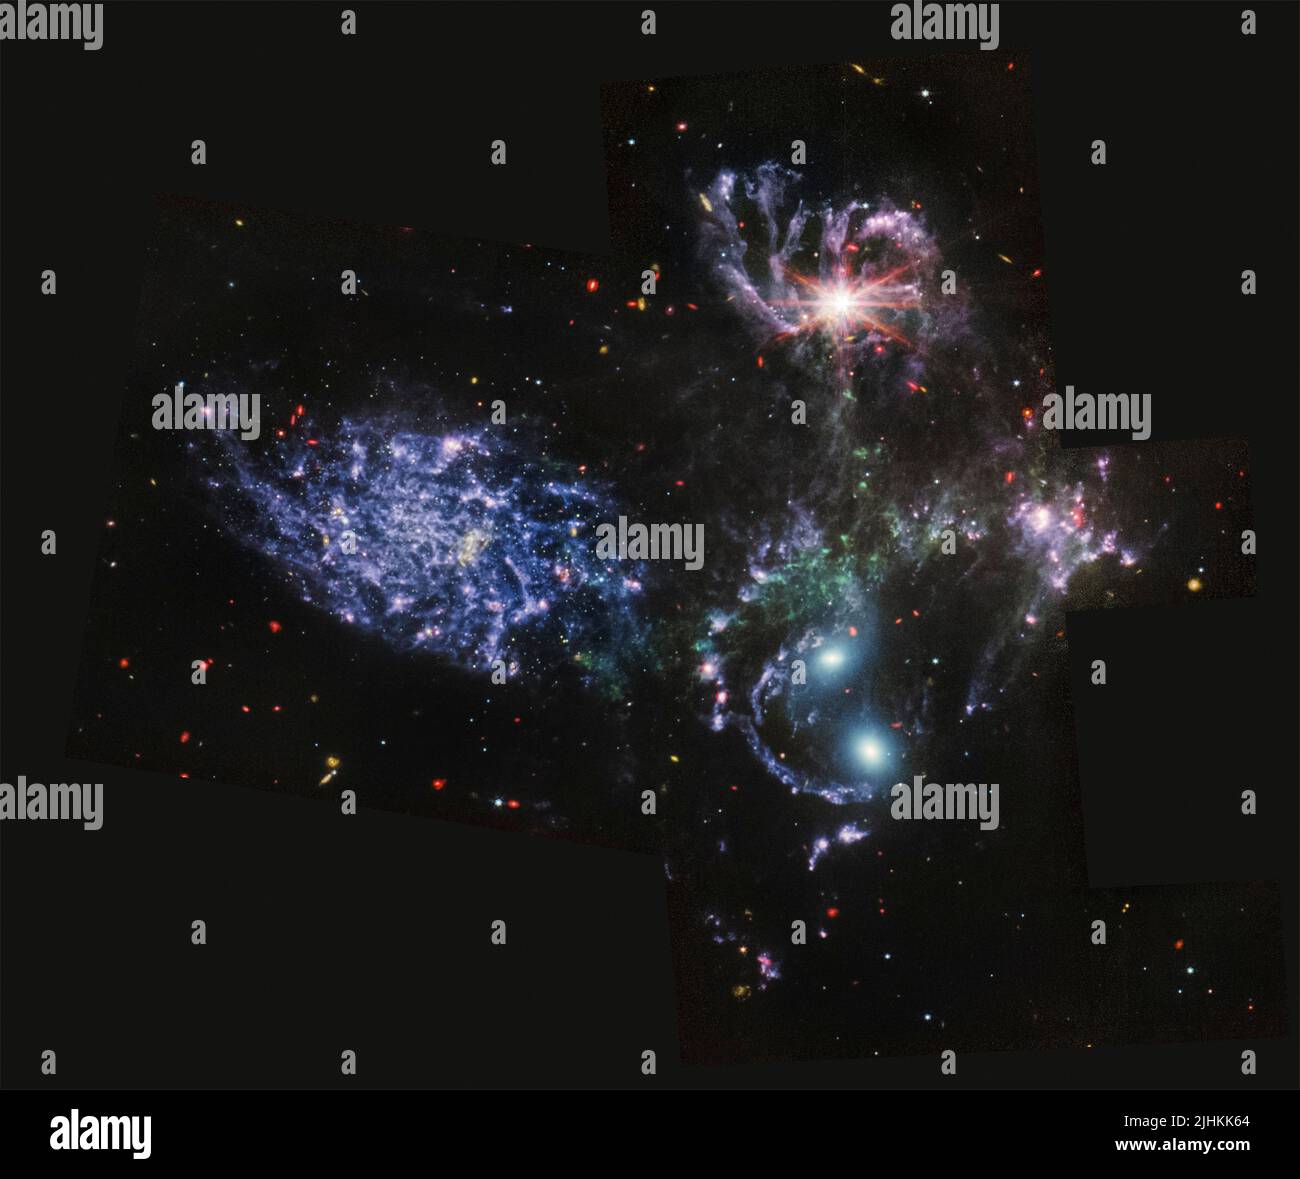 Le regroupement visuel de cinq galaxies connues sous le nom de Stephans Quintet, capturé par le télescope Webb de la NASA, montrant des grappes étincelantes de millions de jeunes étoiles et des régions d'étoiles fraîches nées, sorti de Goddard Space Flight Centre 12 juillet 2022 à Greenbelt, Maryland. Banque D'Images